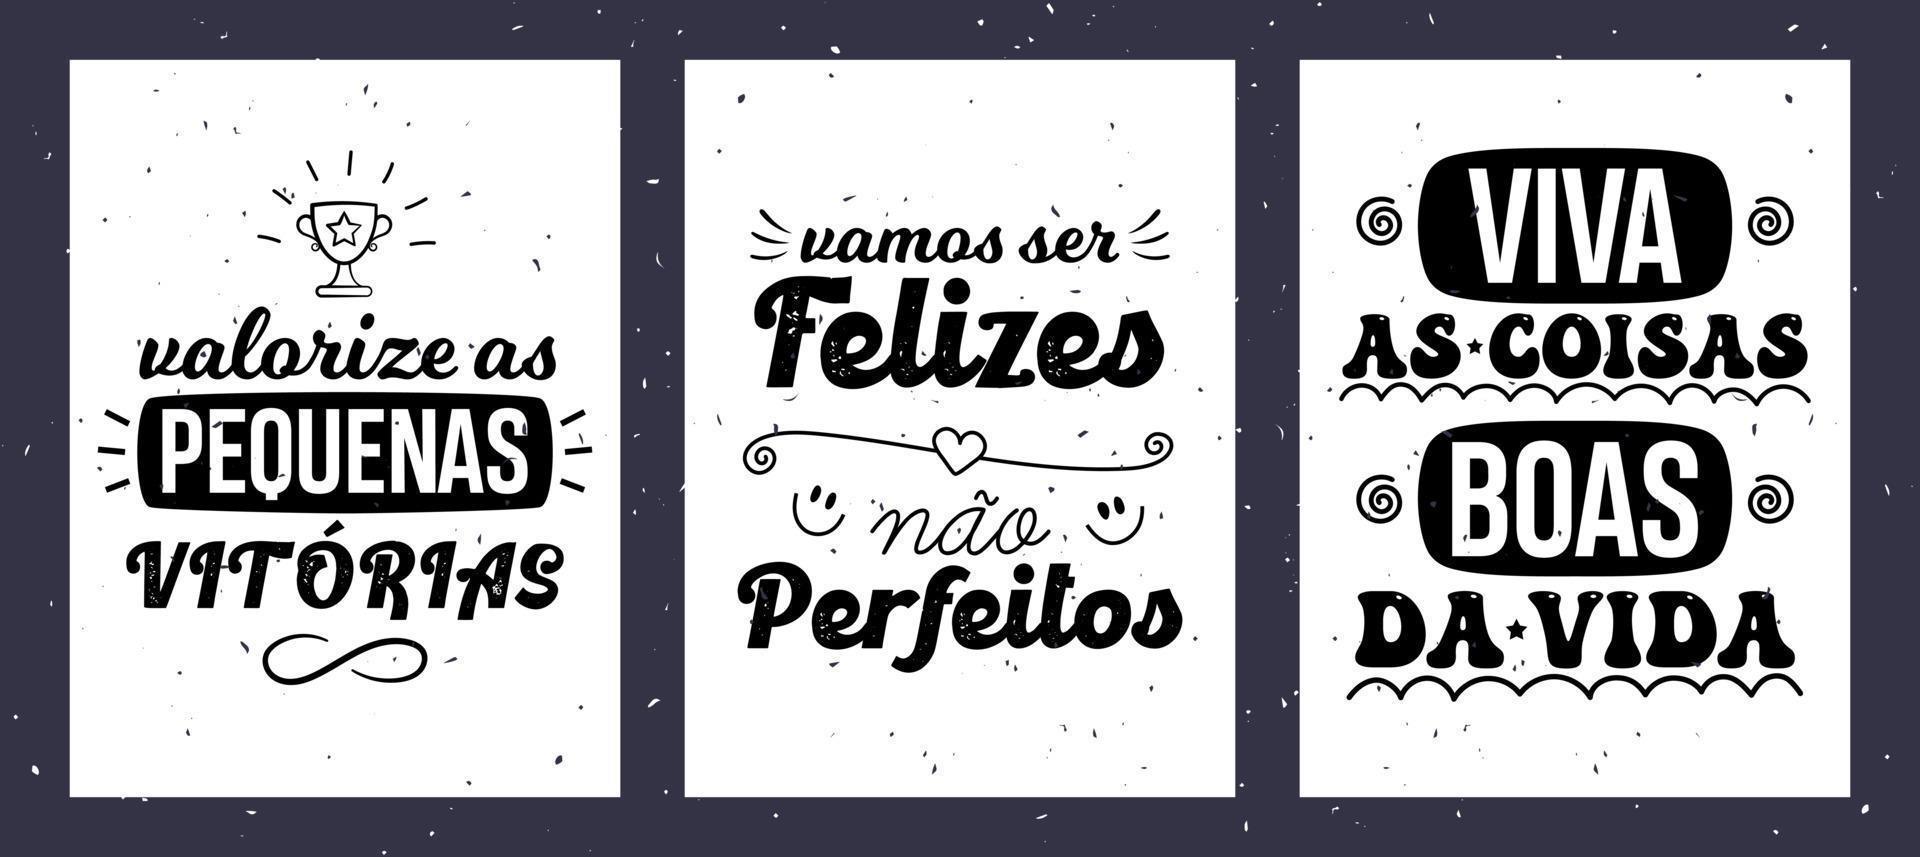 Drei inspirierende Poster in brasilianischem Portugiesisch. Vintage-Stil. Übersetzung - Schätze die kleinen Dinge im Leben. - sei glücklich, nicht perfekt. - sich an den schönen Dingen des Lebens erfreuen. vektor